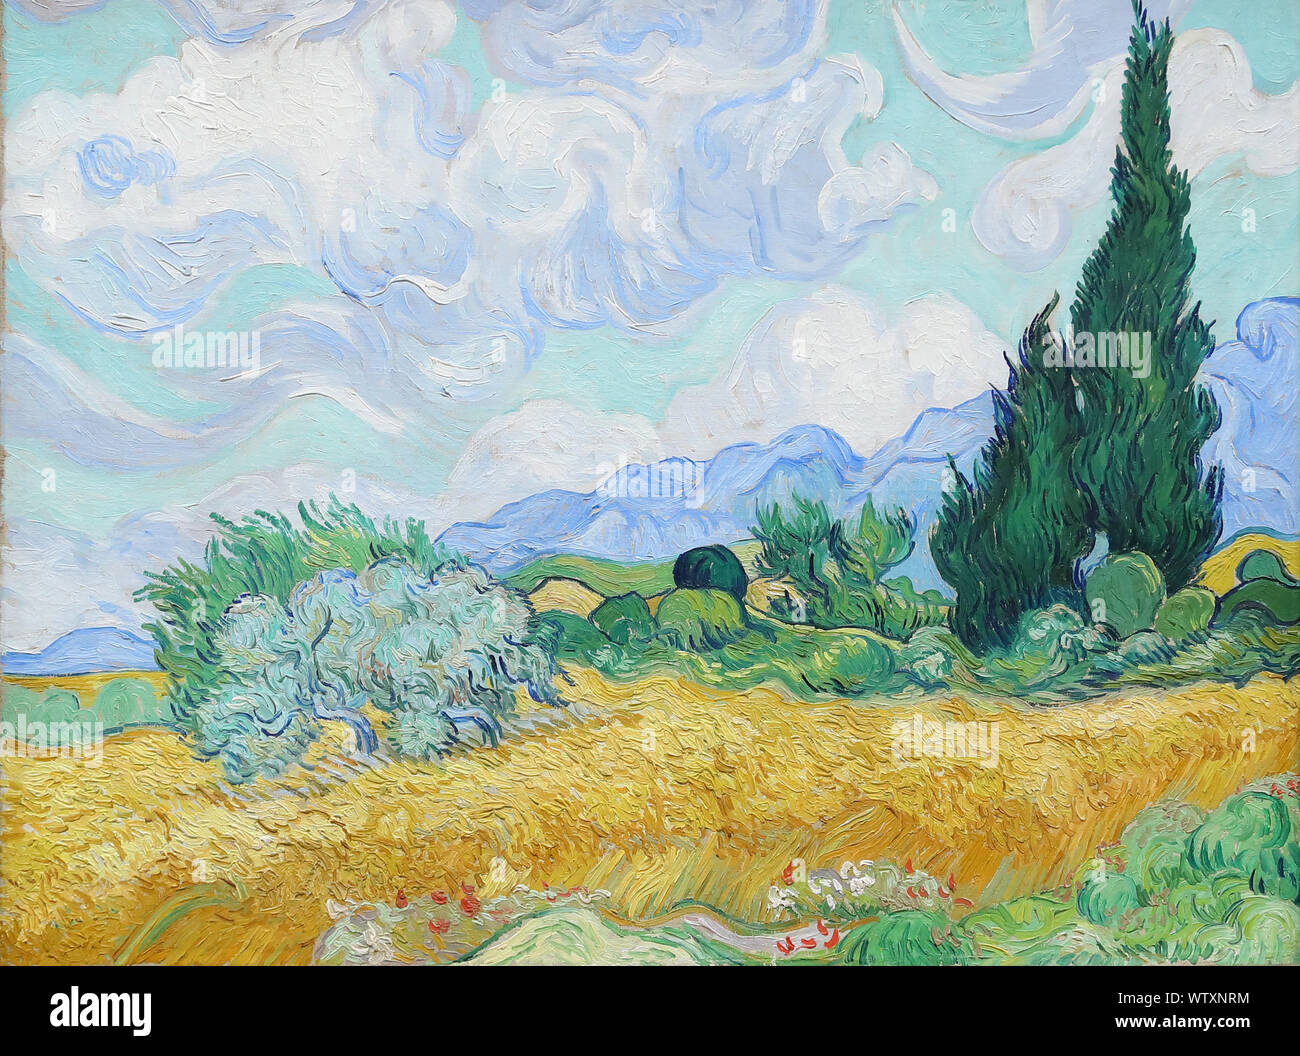 Le champ de blé avec des cyprès par le peintre post-impressionniste néerlandais Vincent van Gogh à la National Gallery, Londres, Royaume-Uni Banque D'Images